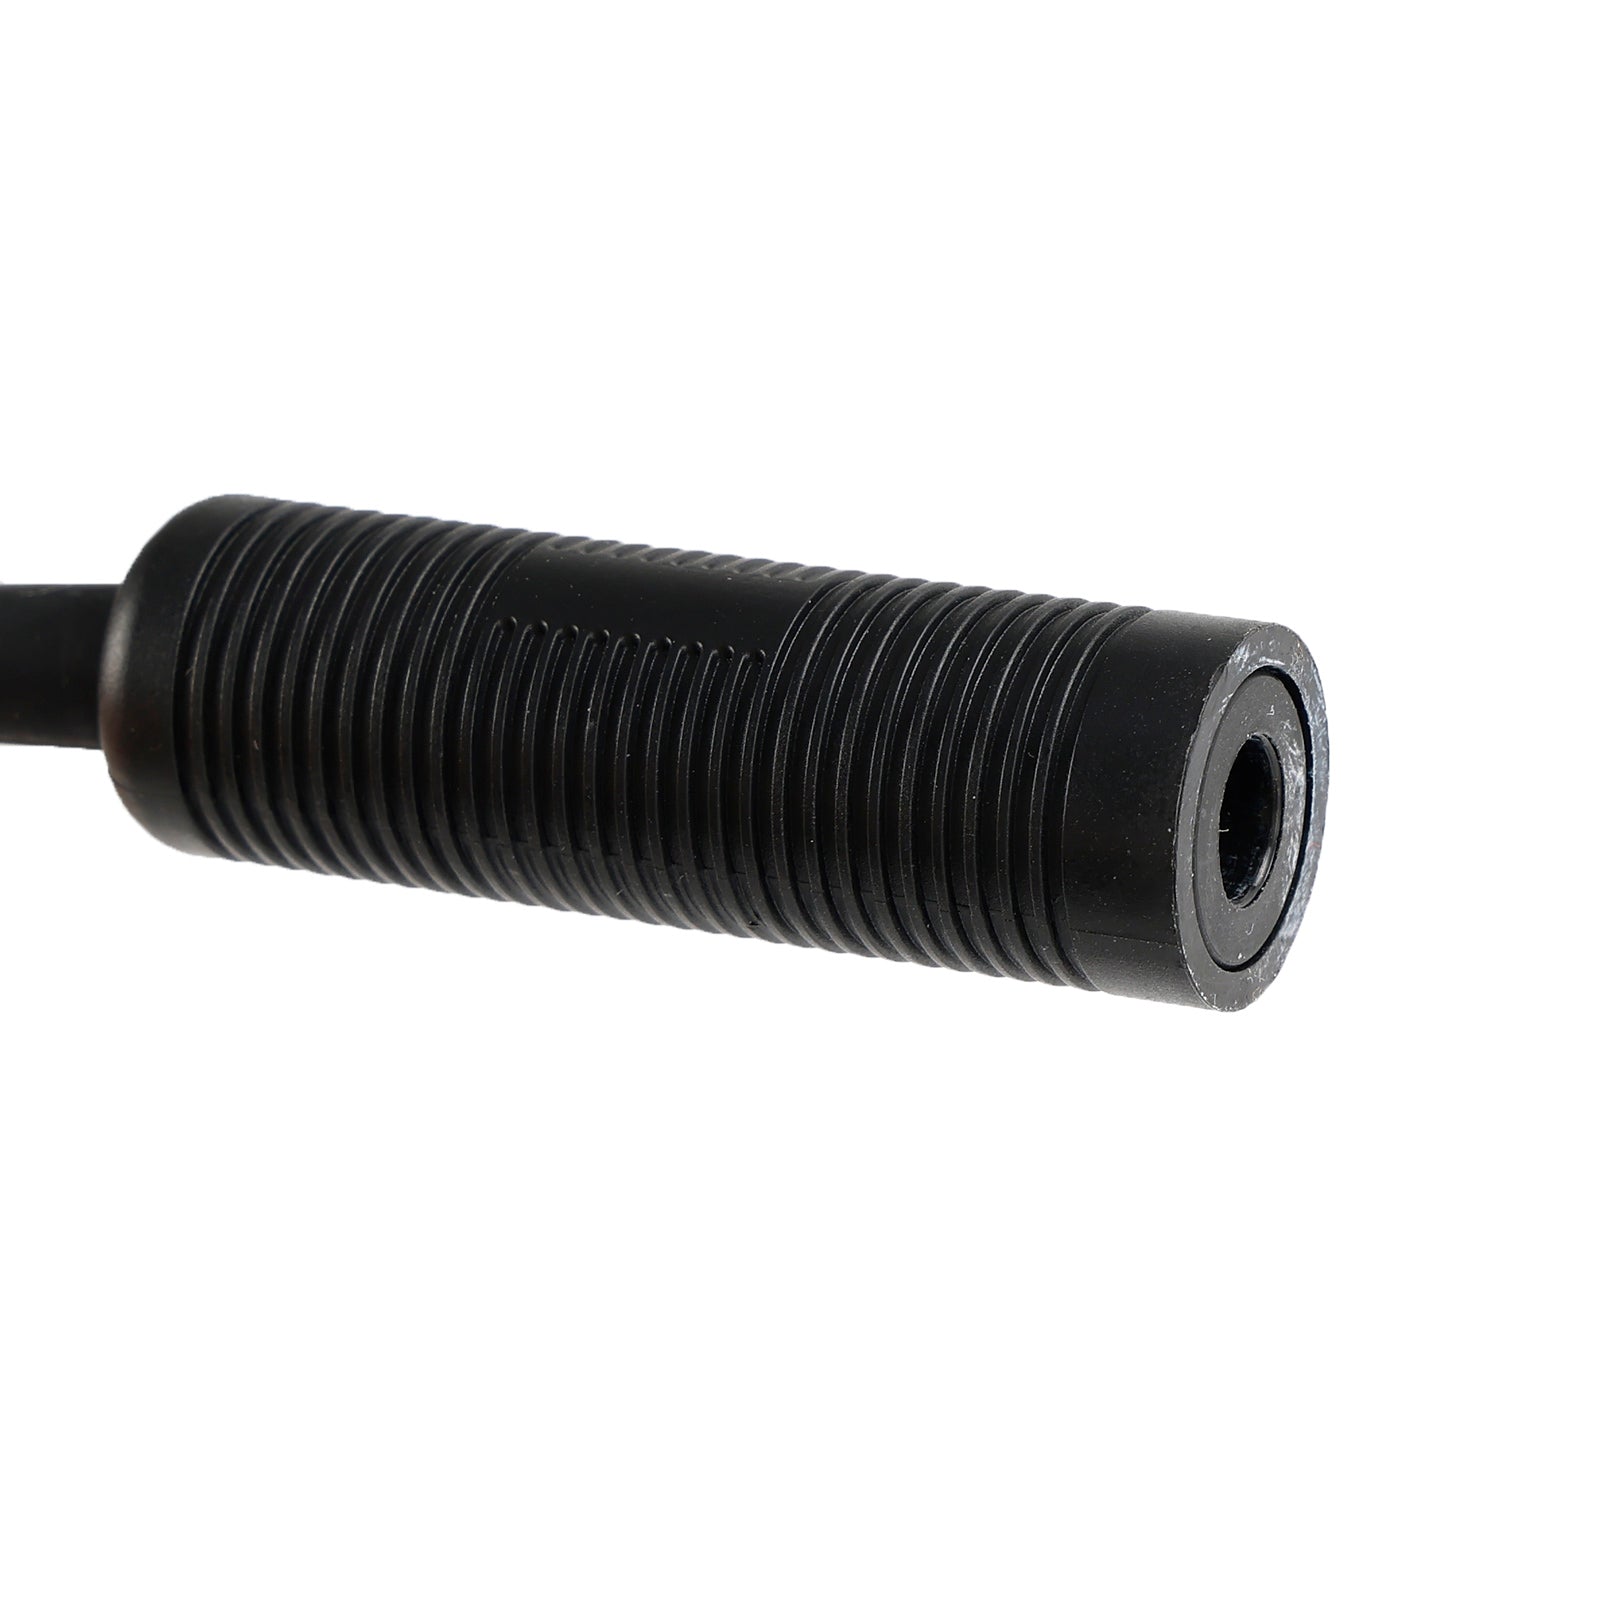 Jack per cuffie tattico con microfono da 7,1 mm per tubo della gola per Hytera PD780/700/580/788/782/785